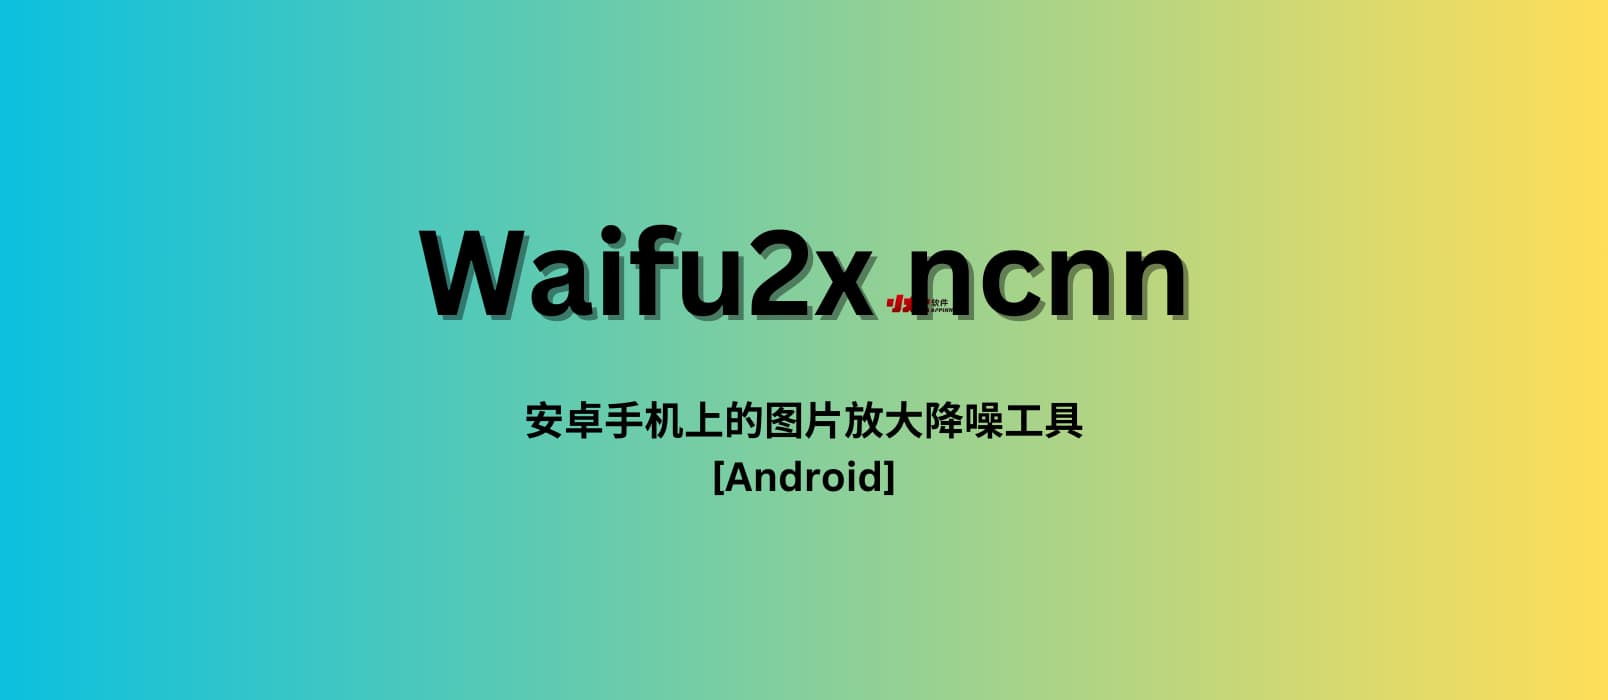 Waifu2x ncnn – 安卓手机上的图片放大降噪神器[Android]